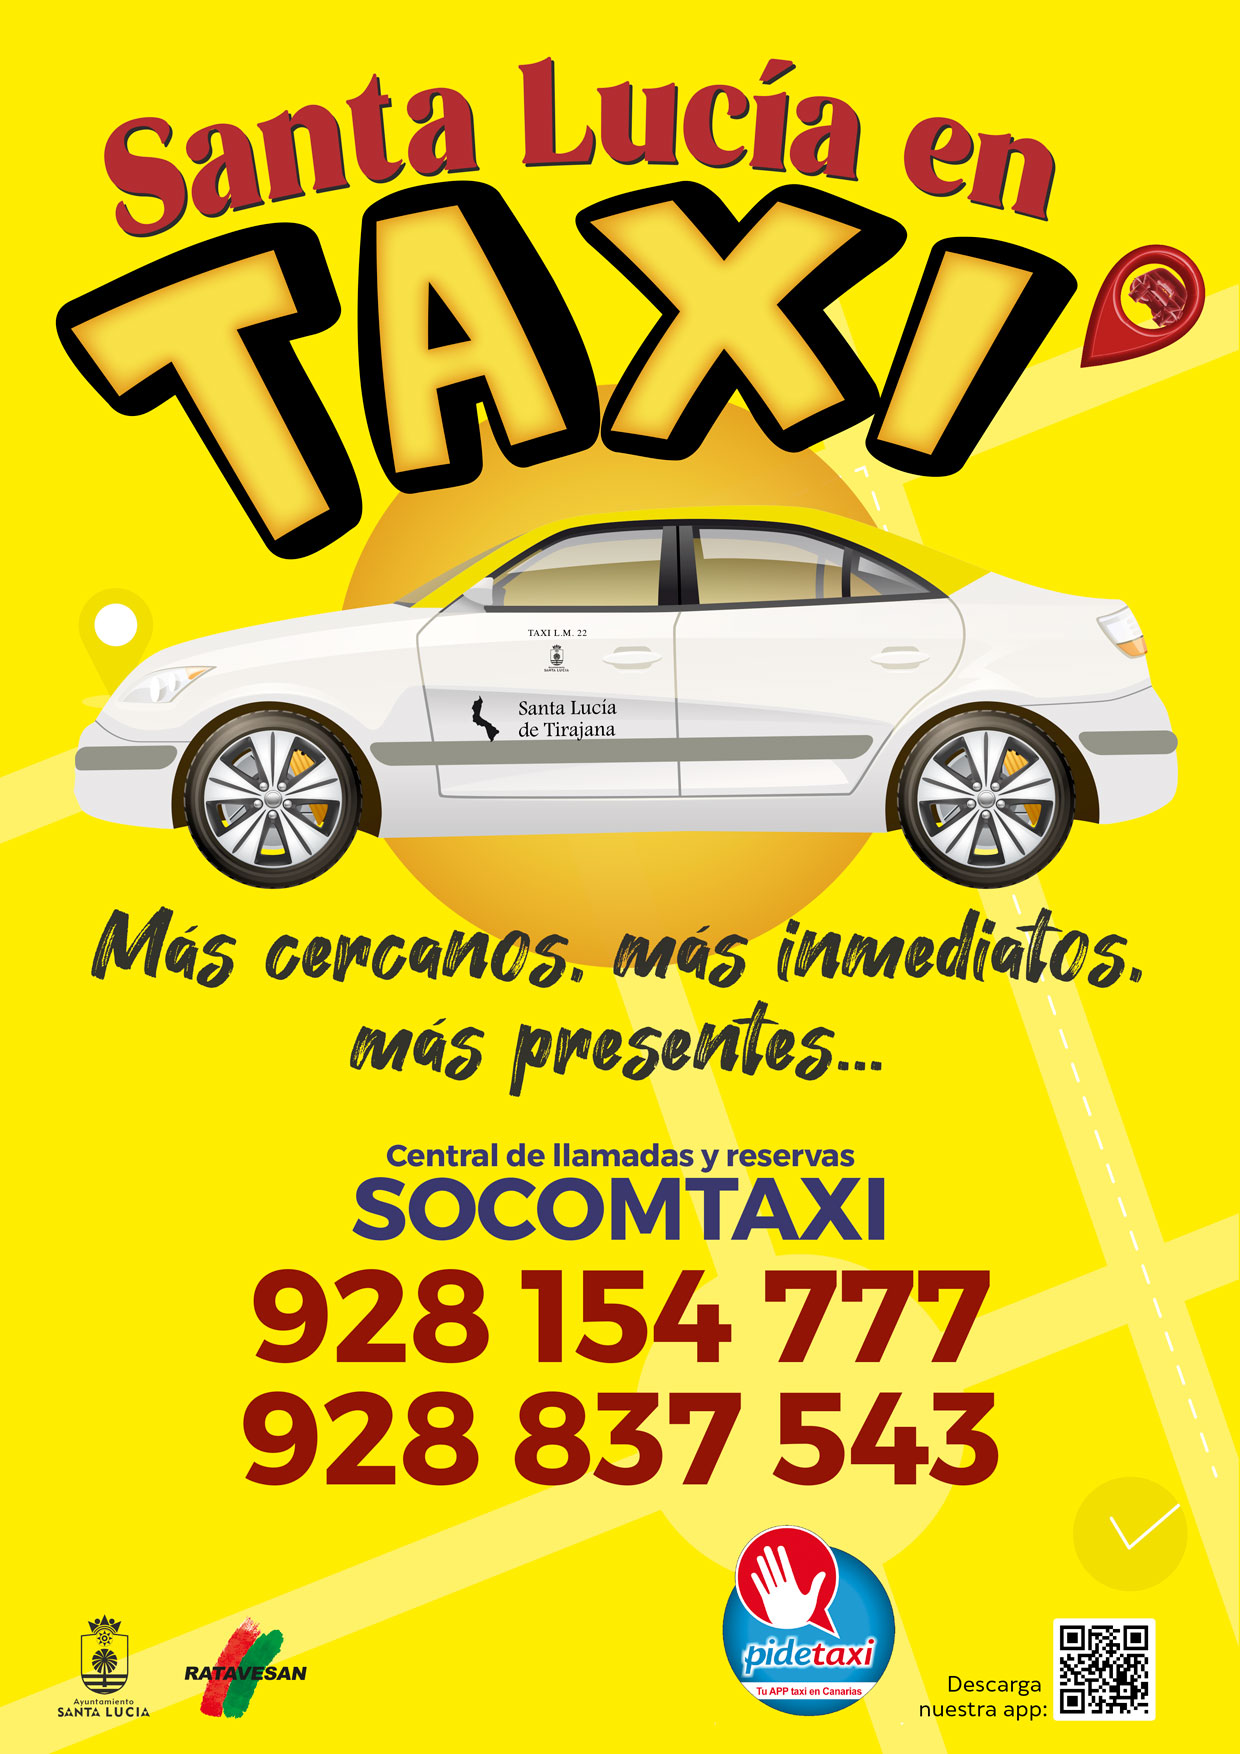 ‘Santa Lucía en taxi’, campaña del Ayuntamiento para apoyar al sector  como transporte más cercano, más inmediato y más presente 